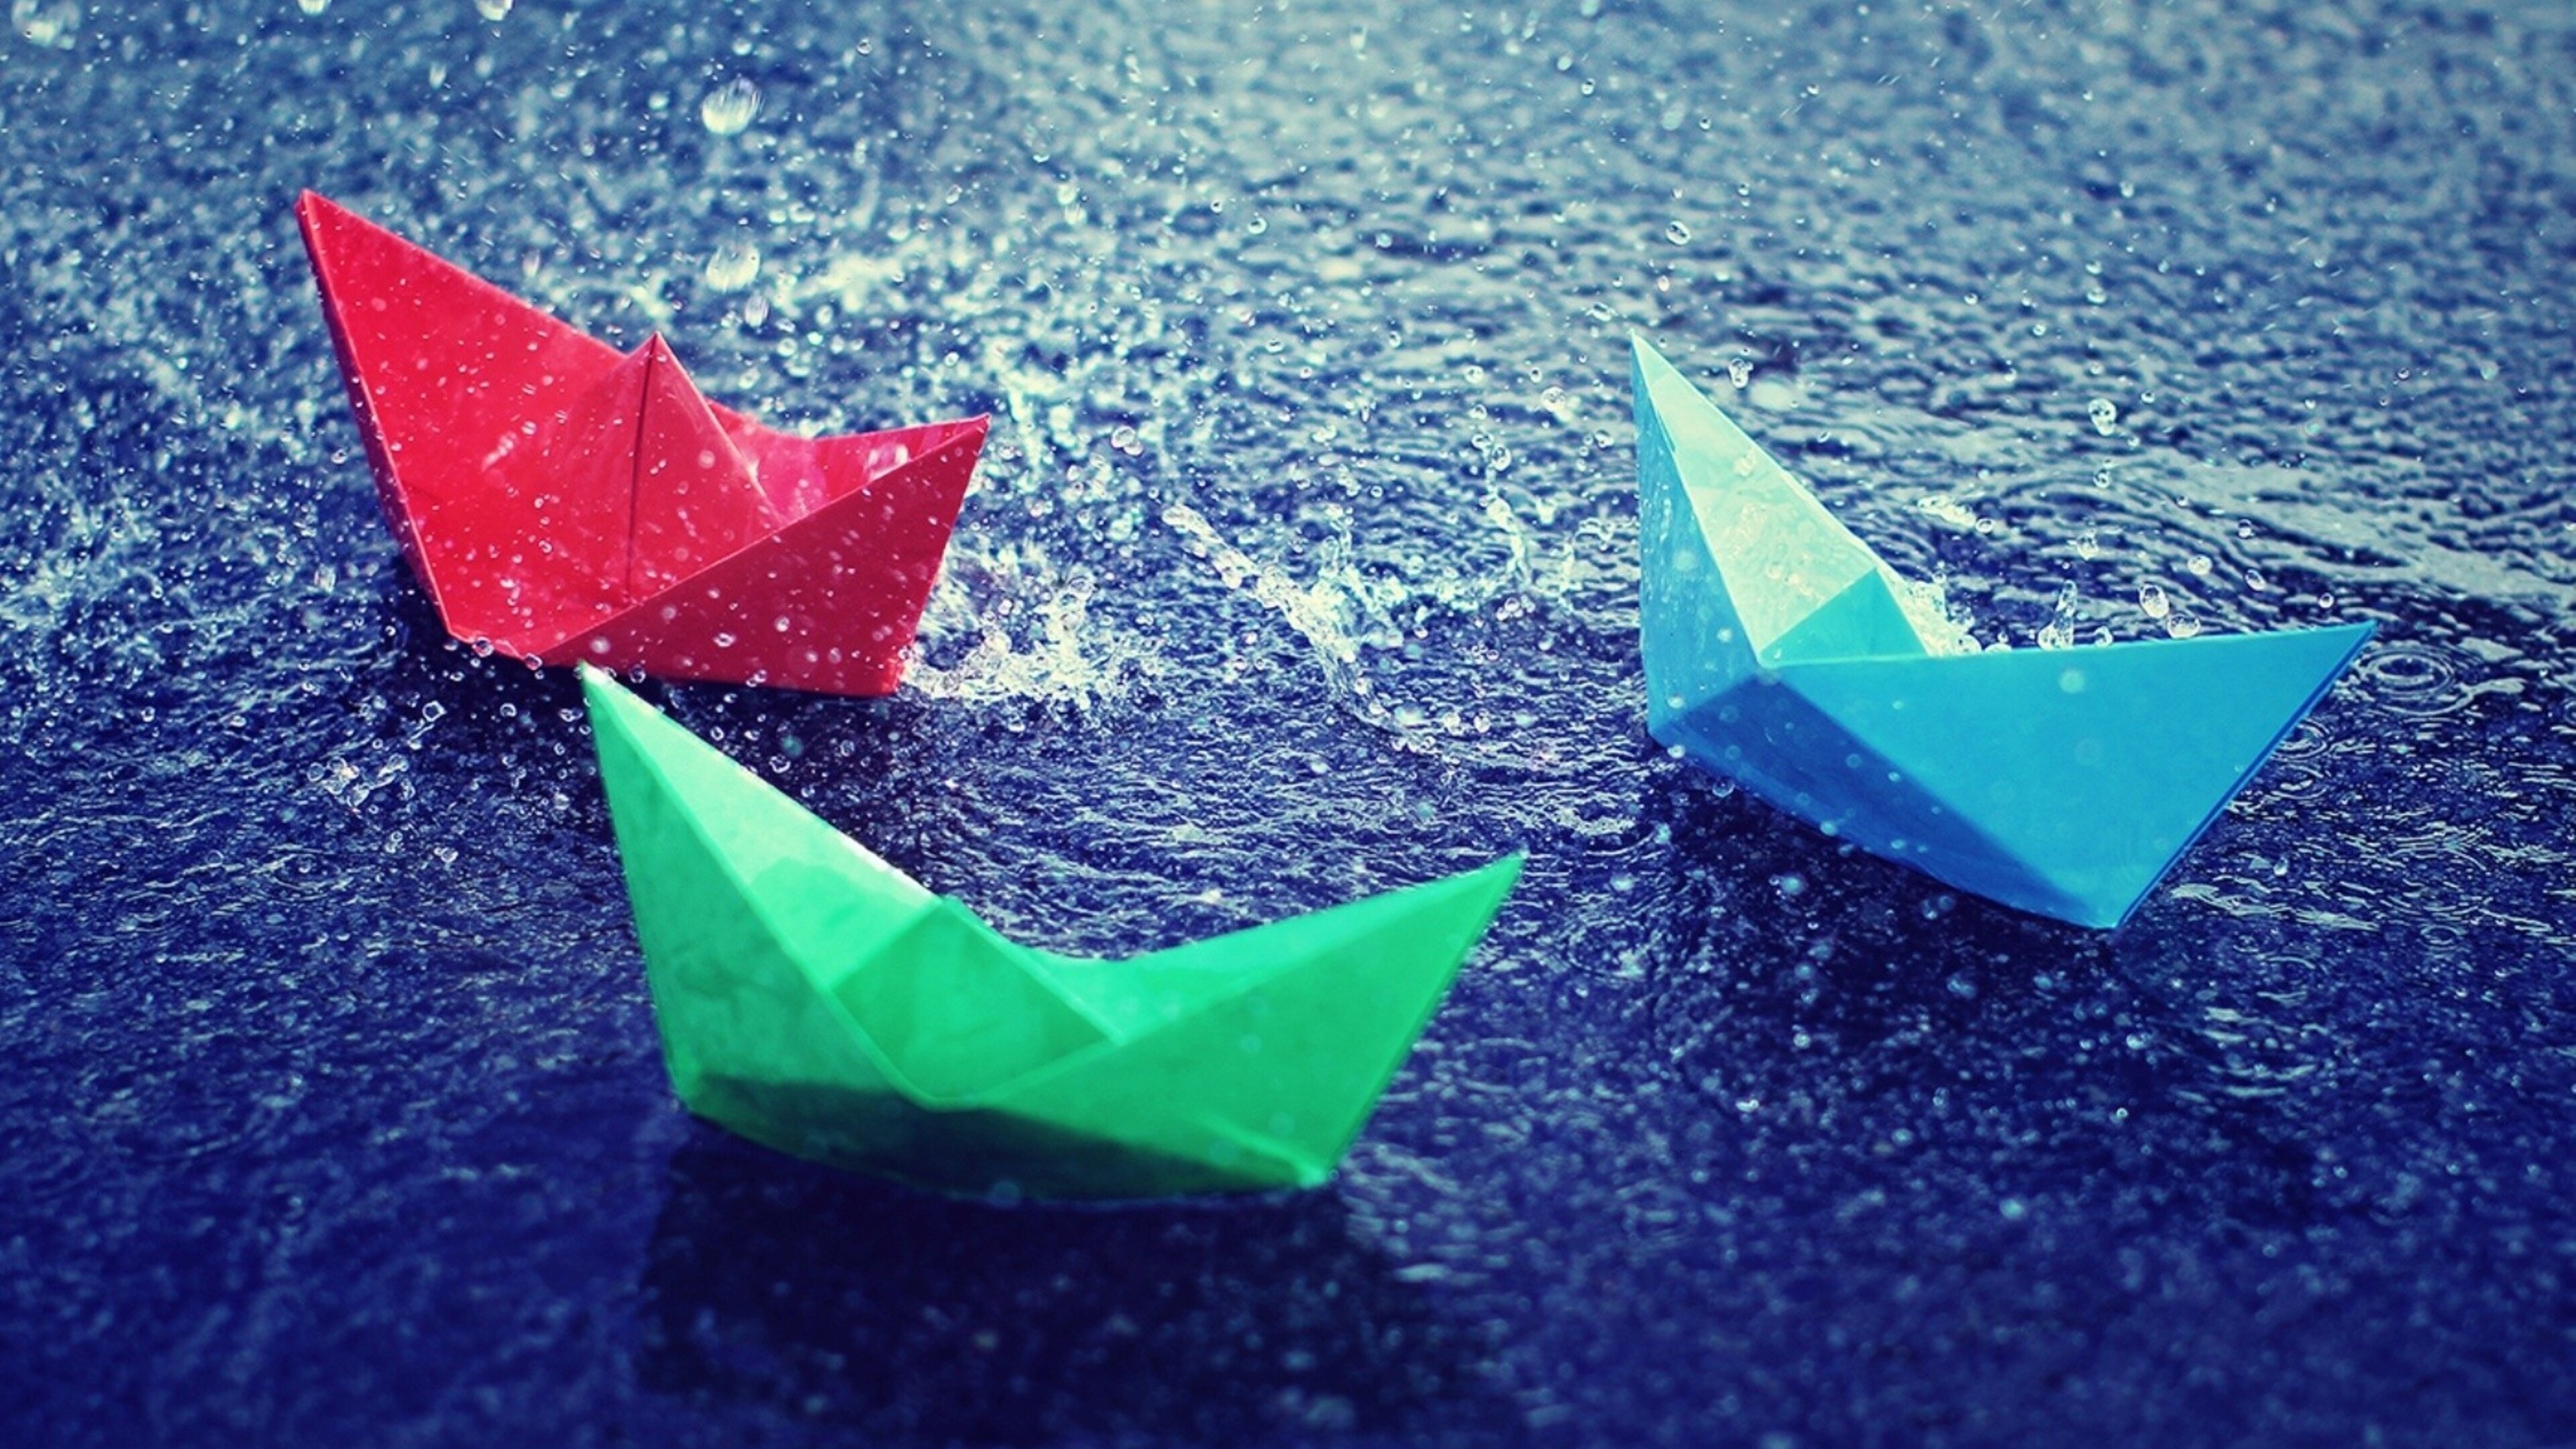 Кораблик из бумаги я по ручью пустил. Бумажный кораблик. Разноцветные кораблики. Красивый бумажный кораблик. День бумажного кораблика.